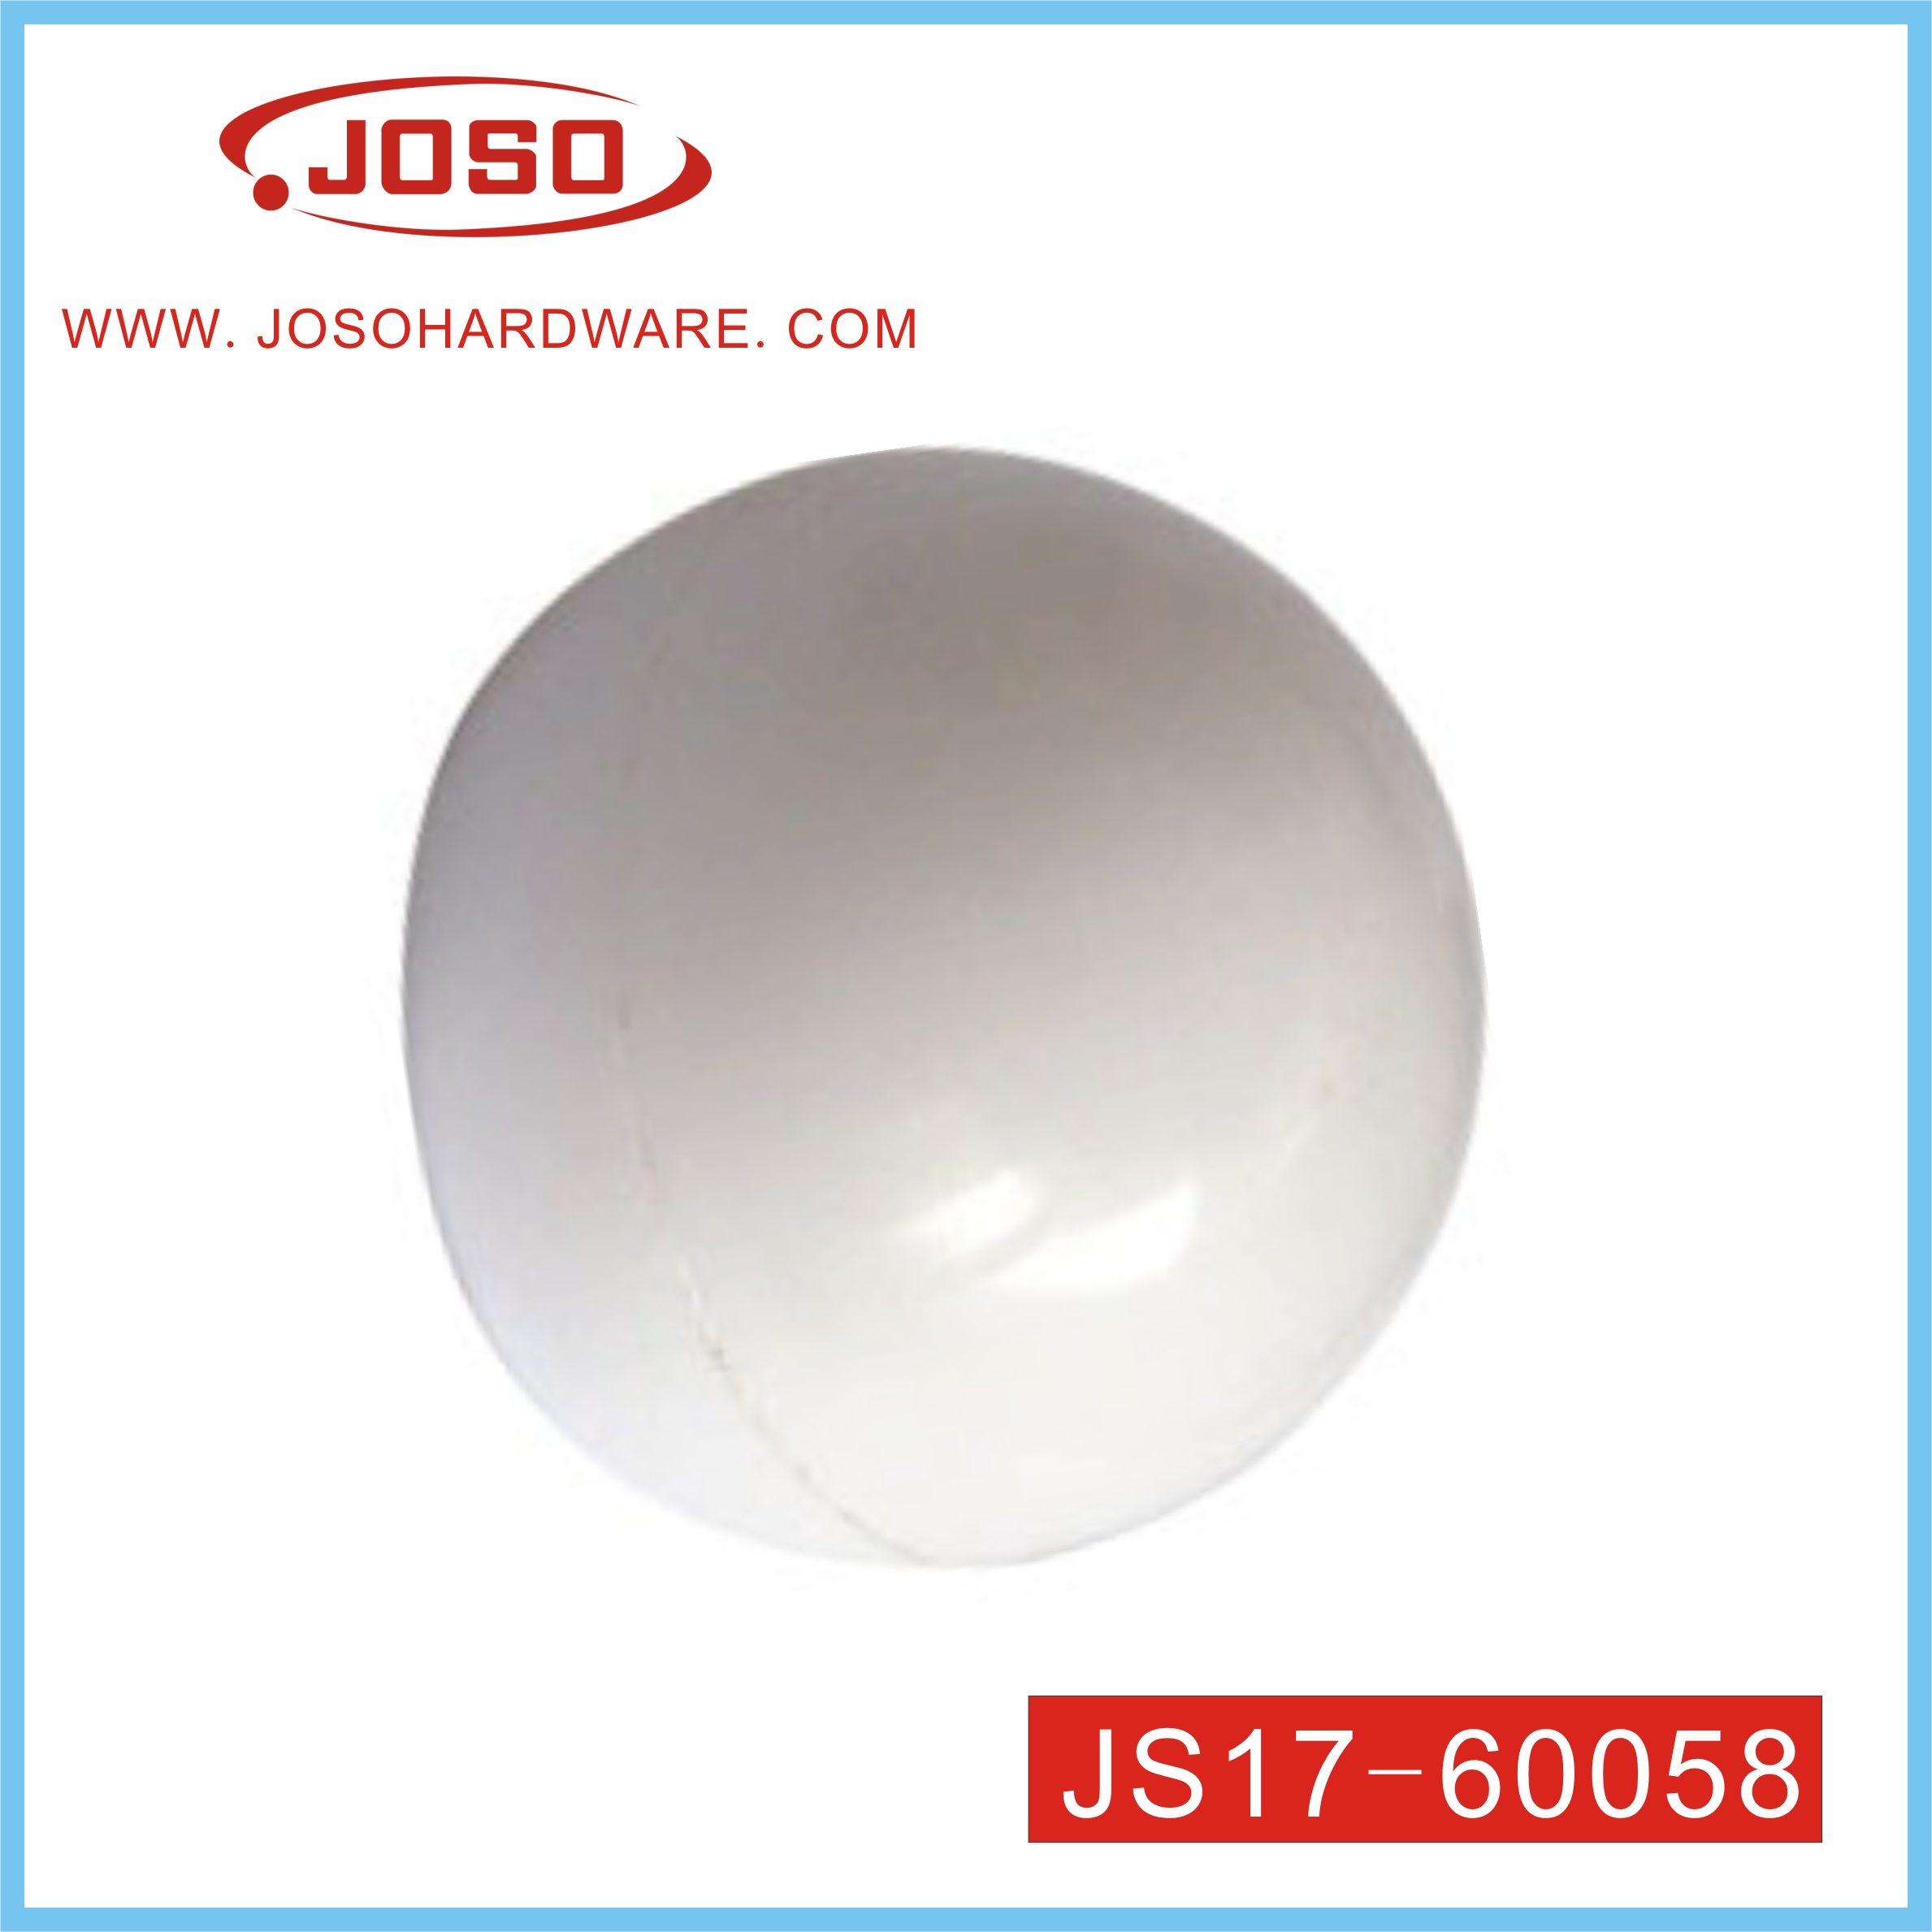 Bola redonda blanca de plástico de herrajes para muebles para tubo